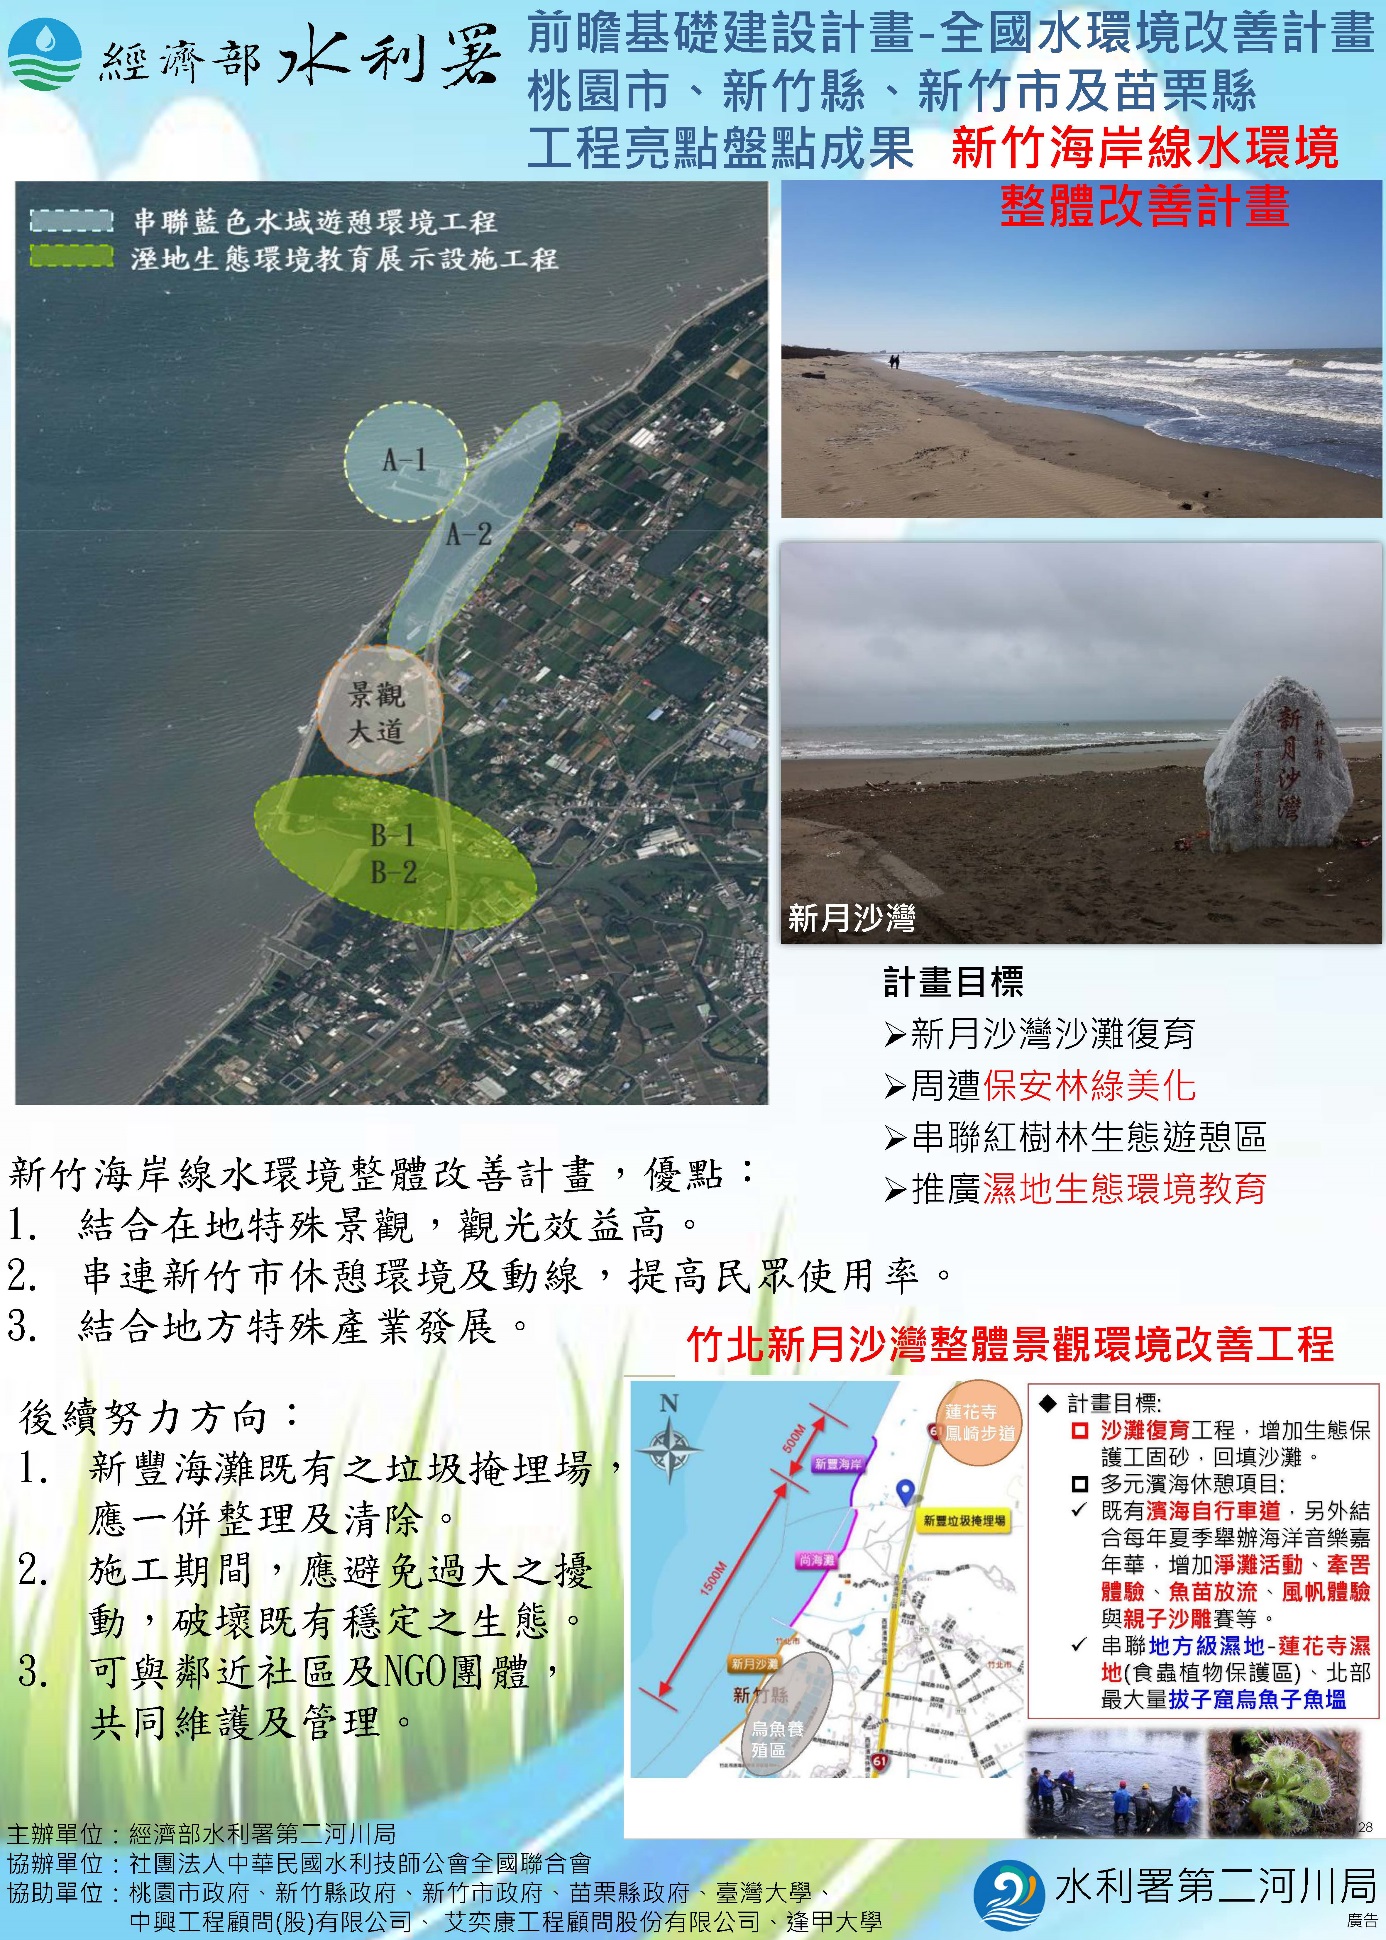 圖1 新竹縣頭前溪整體水岸及海岸線水環境整體改善計畫成果海報2